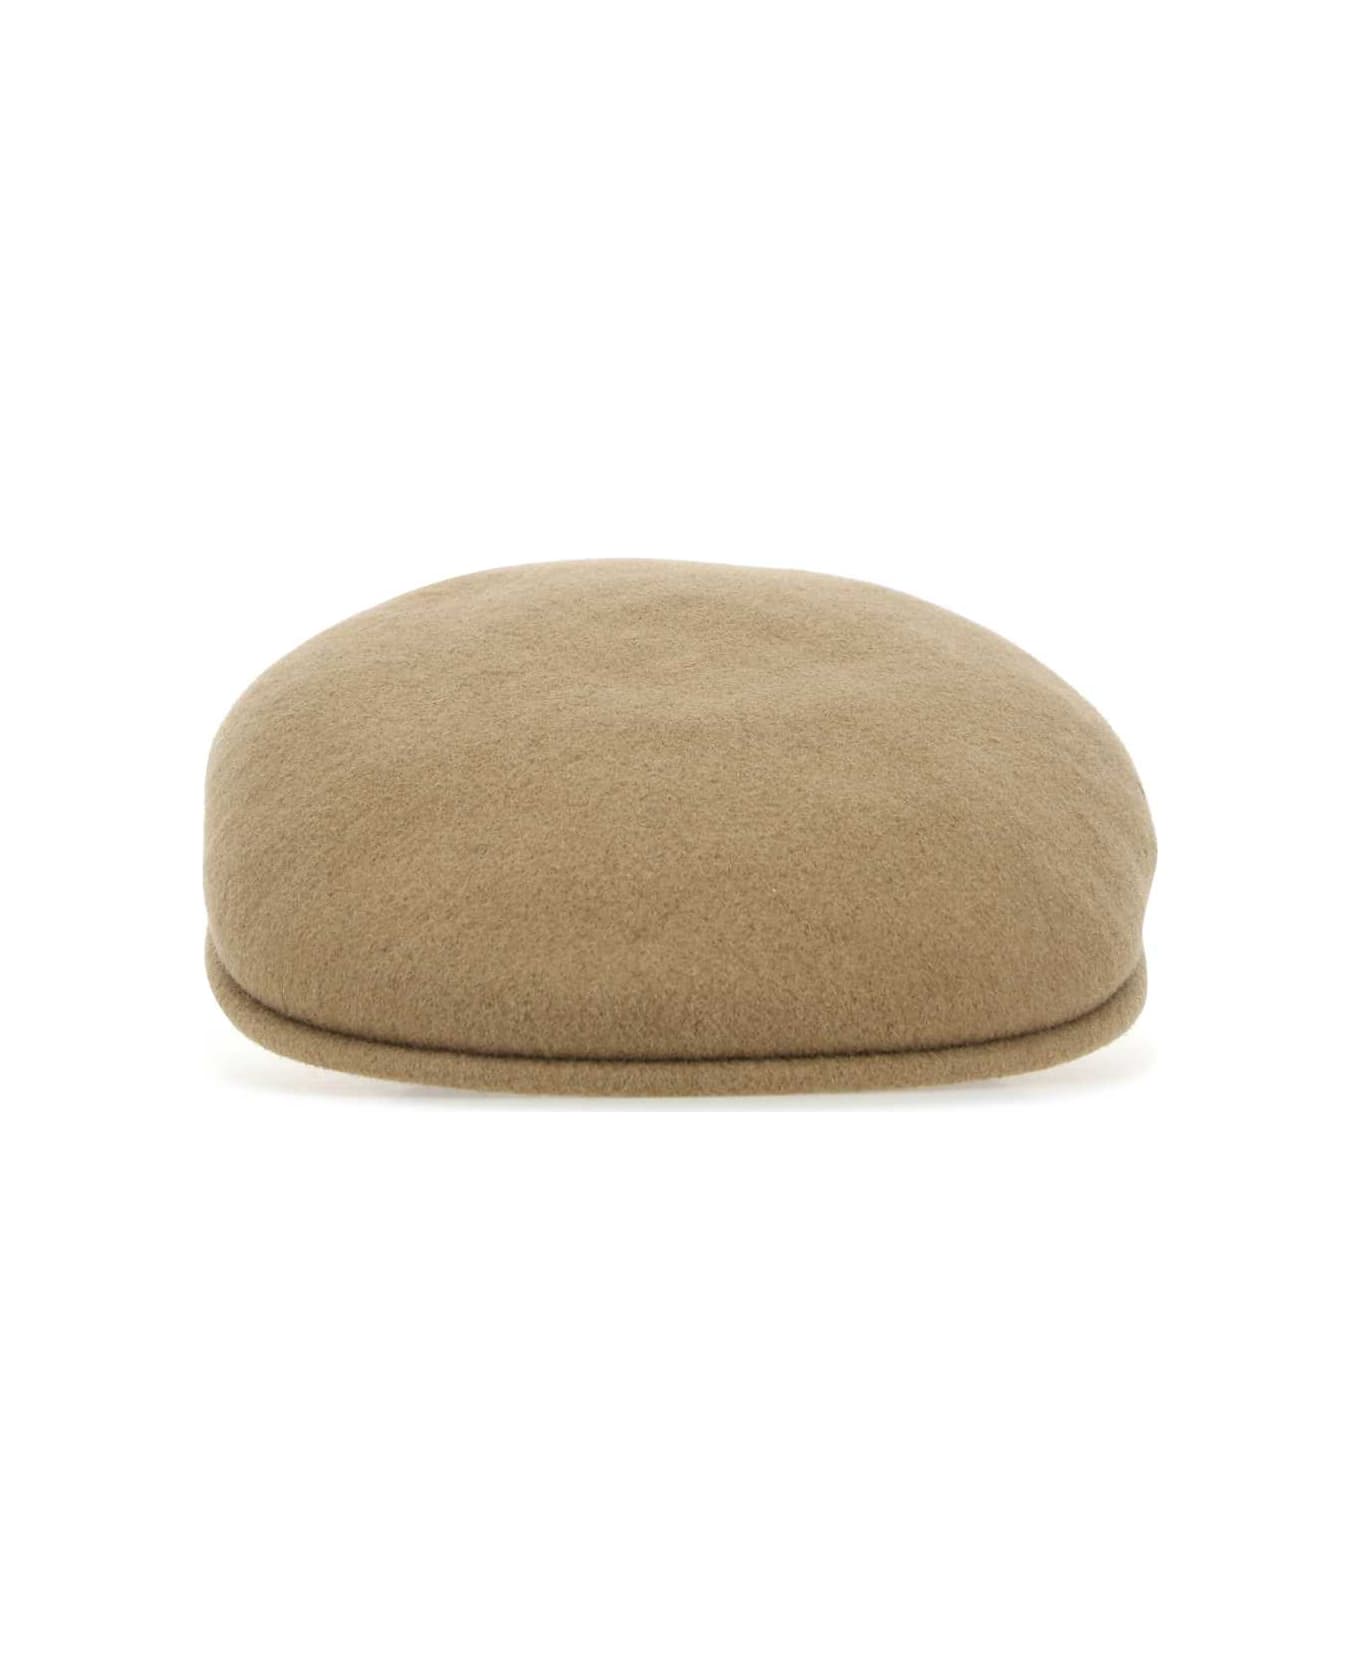 Kangol Cappuccino Felt Baker Boy Hat - CM227